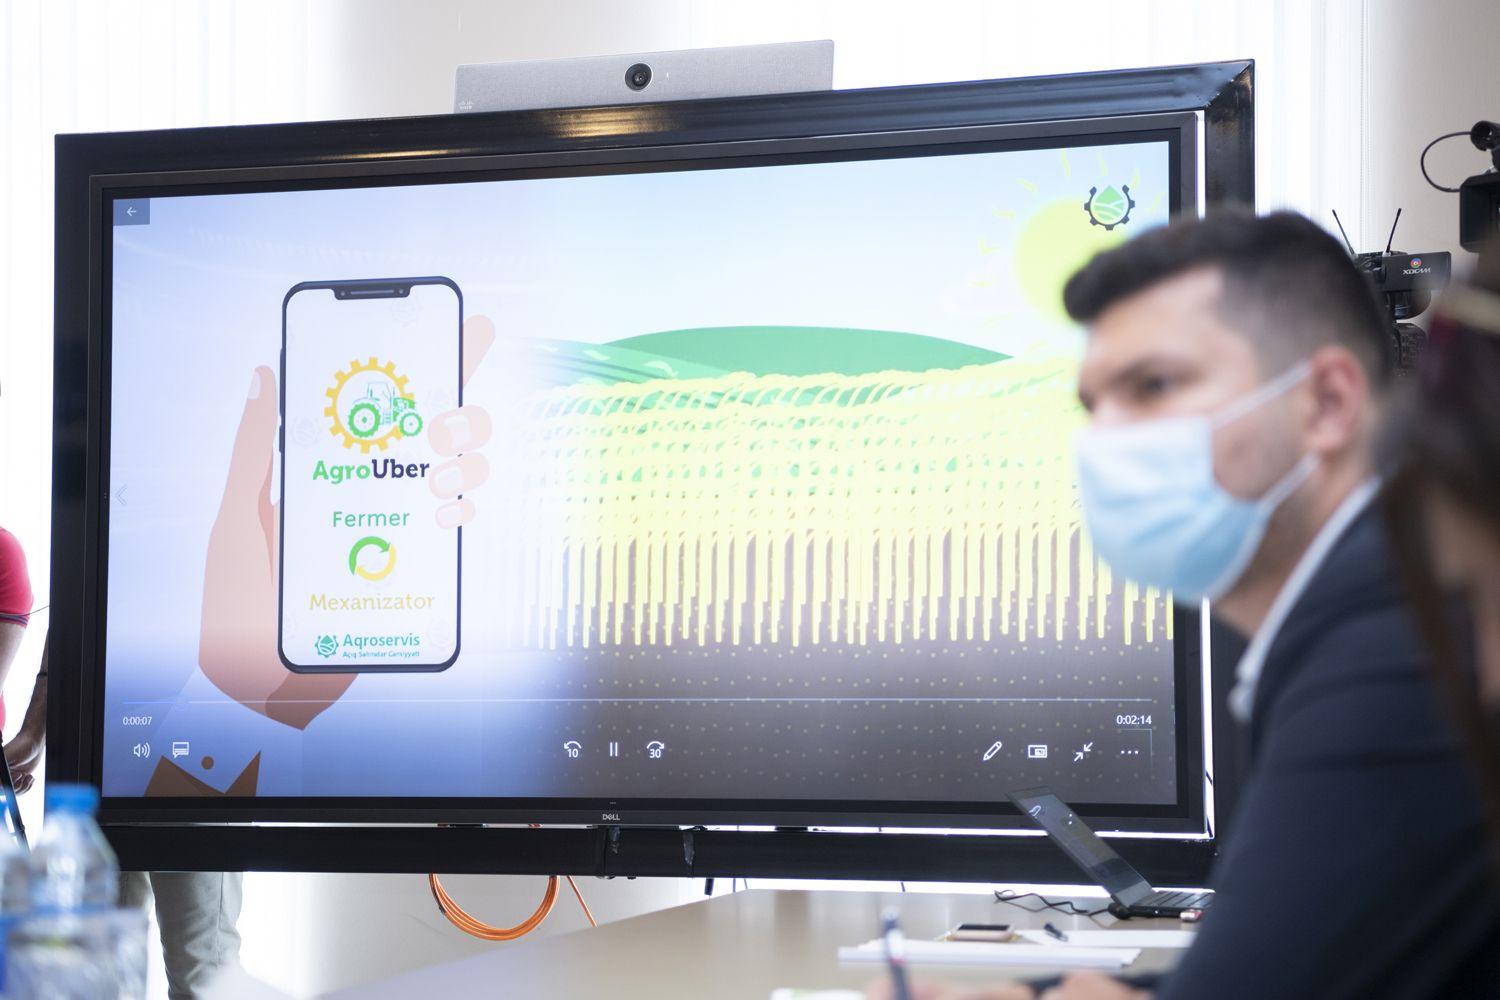 Fermer-mexanizator əlaqəsini təmin edəcək “AgroUber” mobil tətbiqi istifadəyə verilib